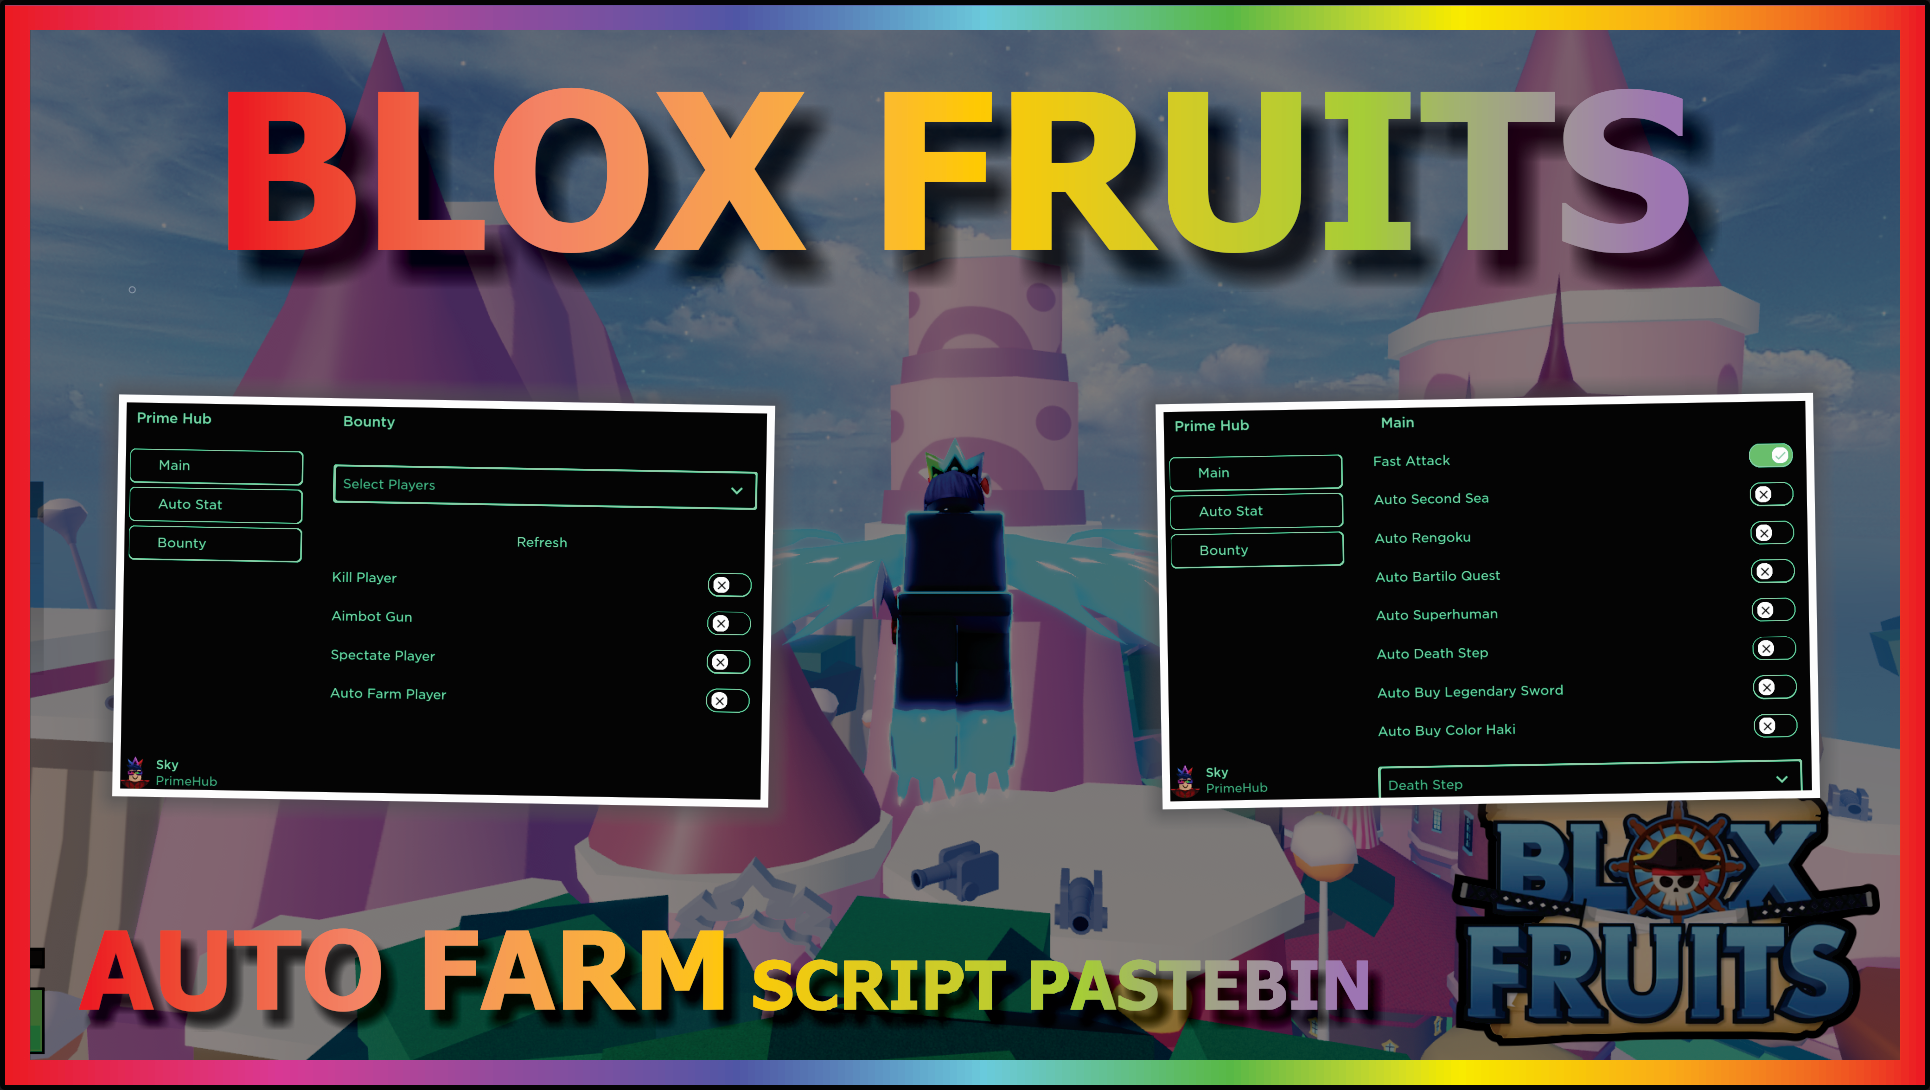 Скрипт на фрукты blox fruits. Скрипт BLOX Fruits. BLOX Fruit scripts 2022. BLOX Fruits script. BLOX Fruits script pastebin.